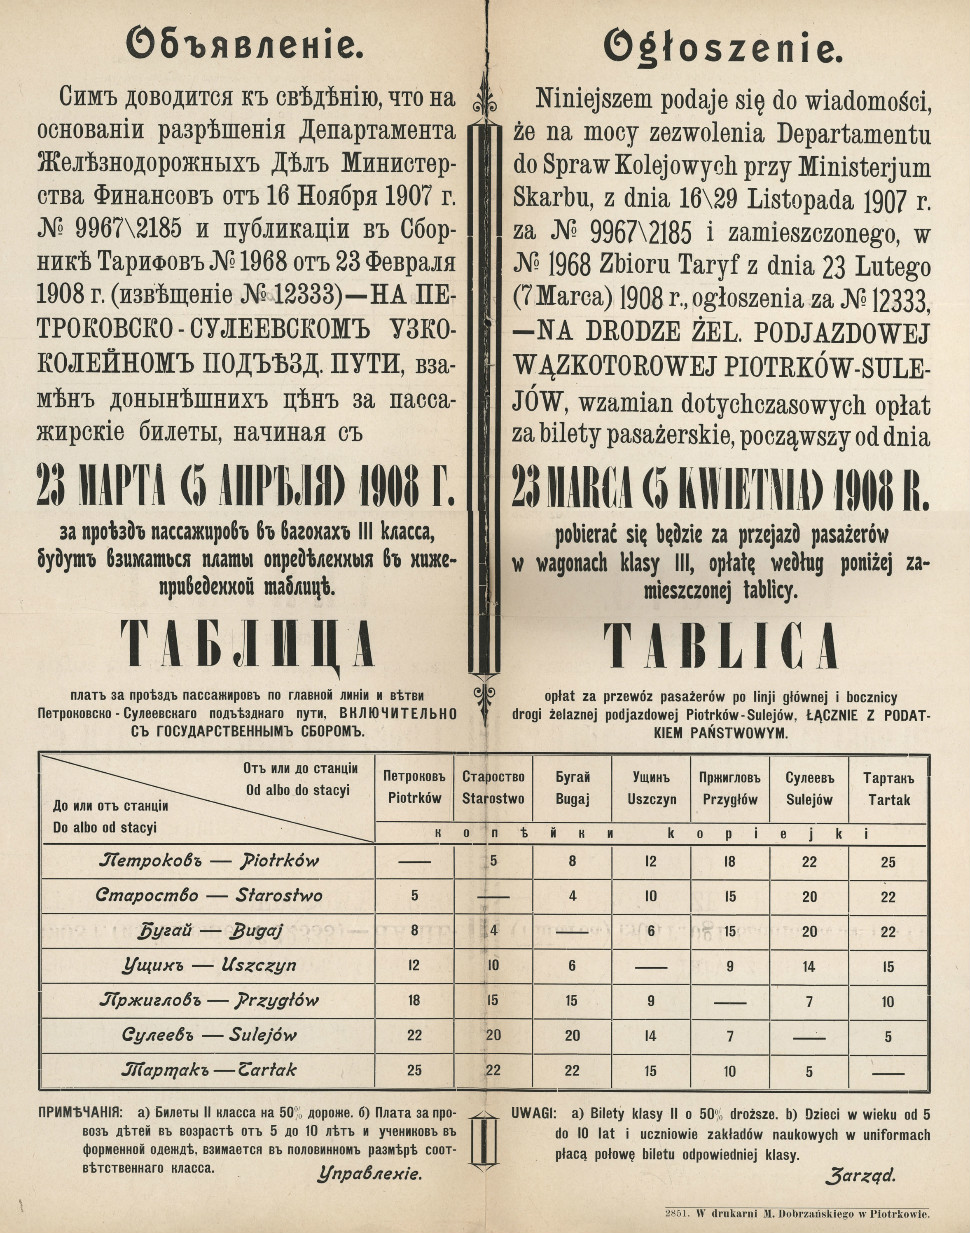 Ogłoszenie o wysokości opłat obowiązujących na kolejce sulejowskiej, 1908 r.